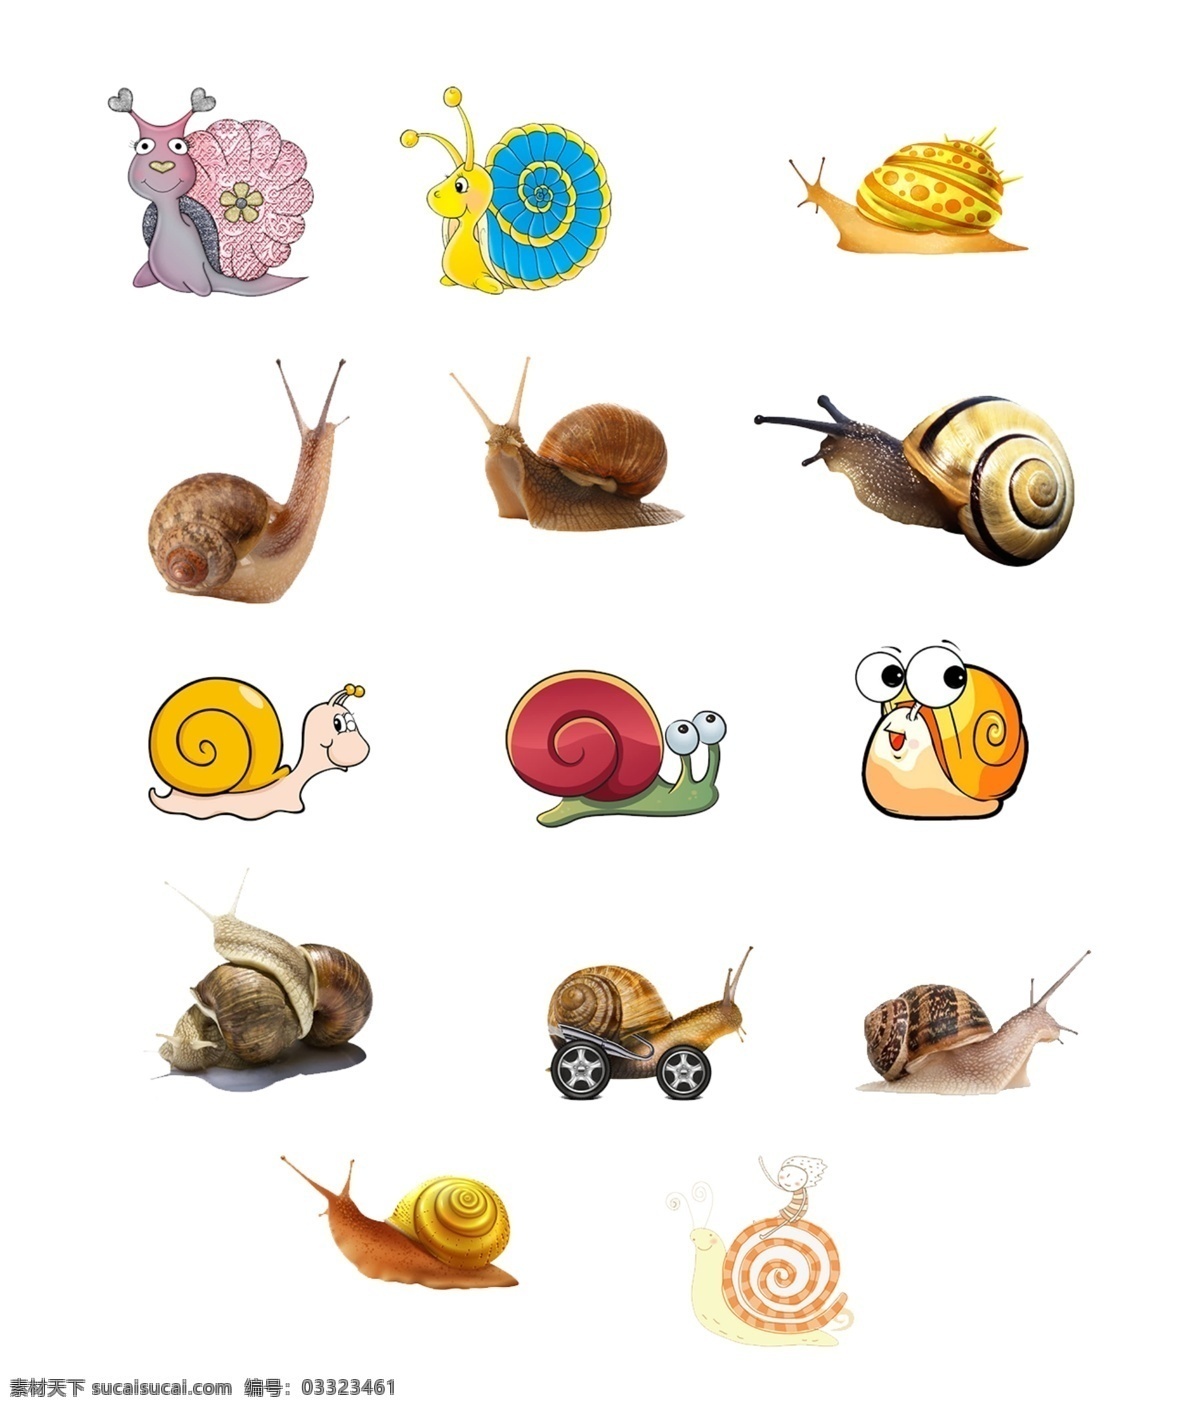 蜗牛 蜗牛造型 幼儿园卡 爬行蜗牛 卡通蜗牛 蜗牛素材 唯美 可爱 动物 生物 昆虫 小蜗牛